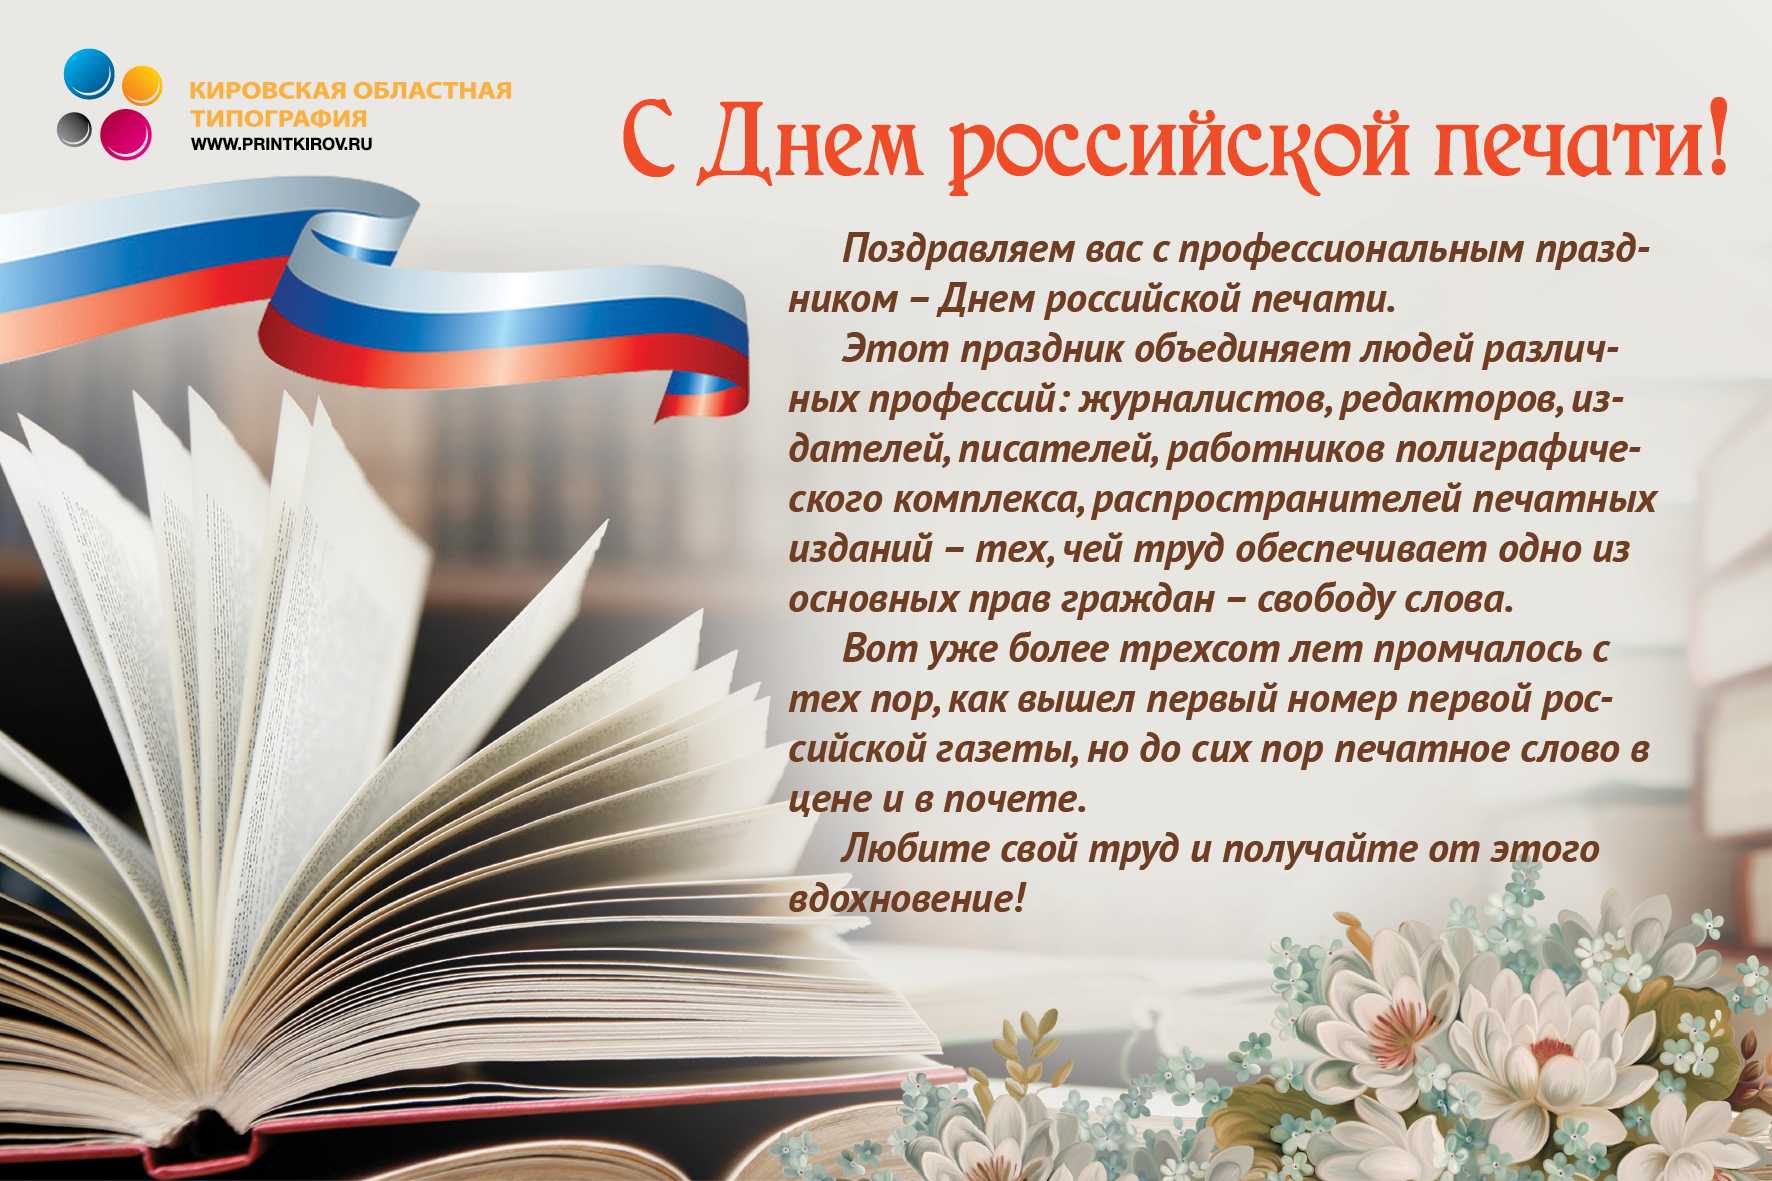 Официальные поздравления с днем российской печати